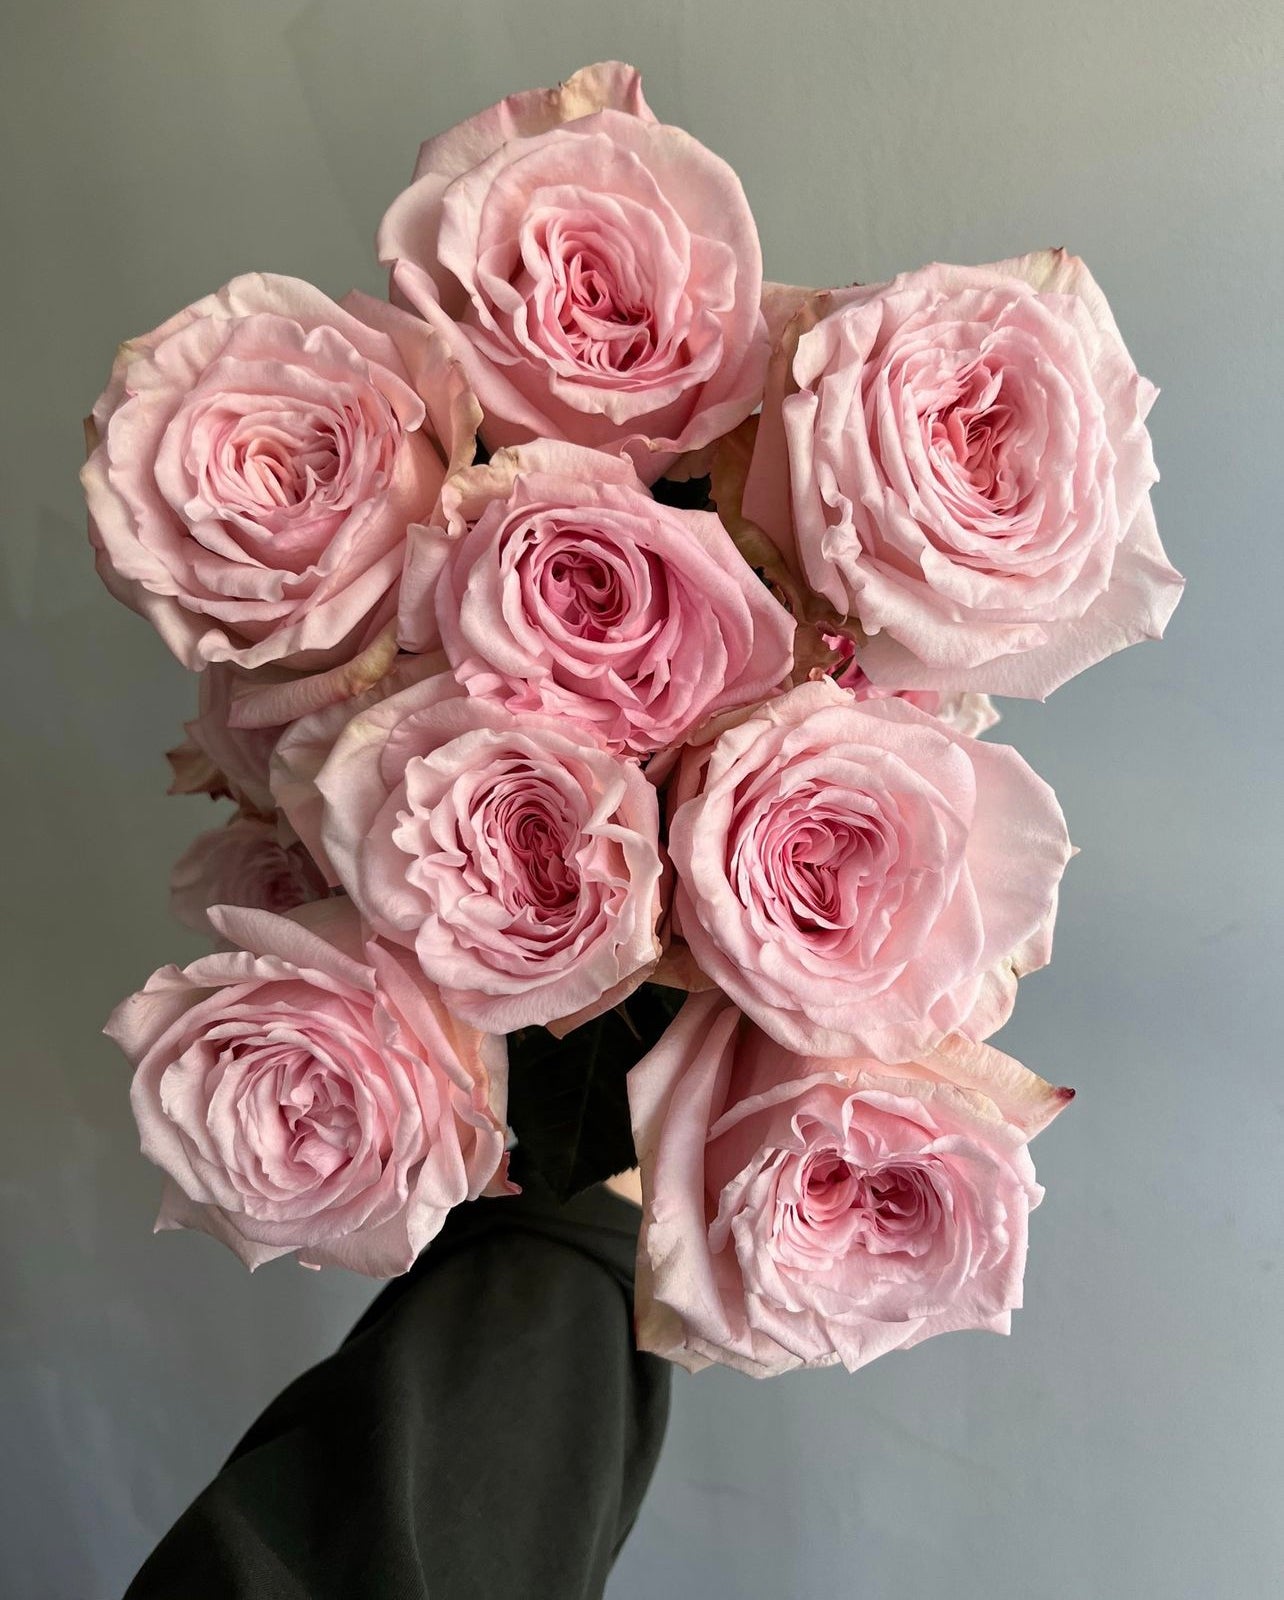 Queen’s Crown Roses